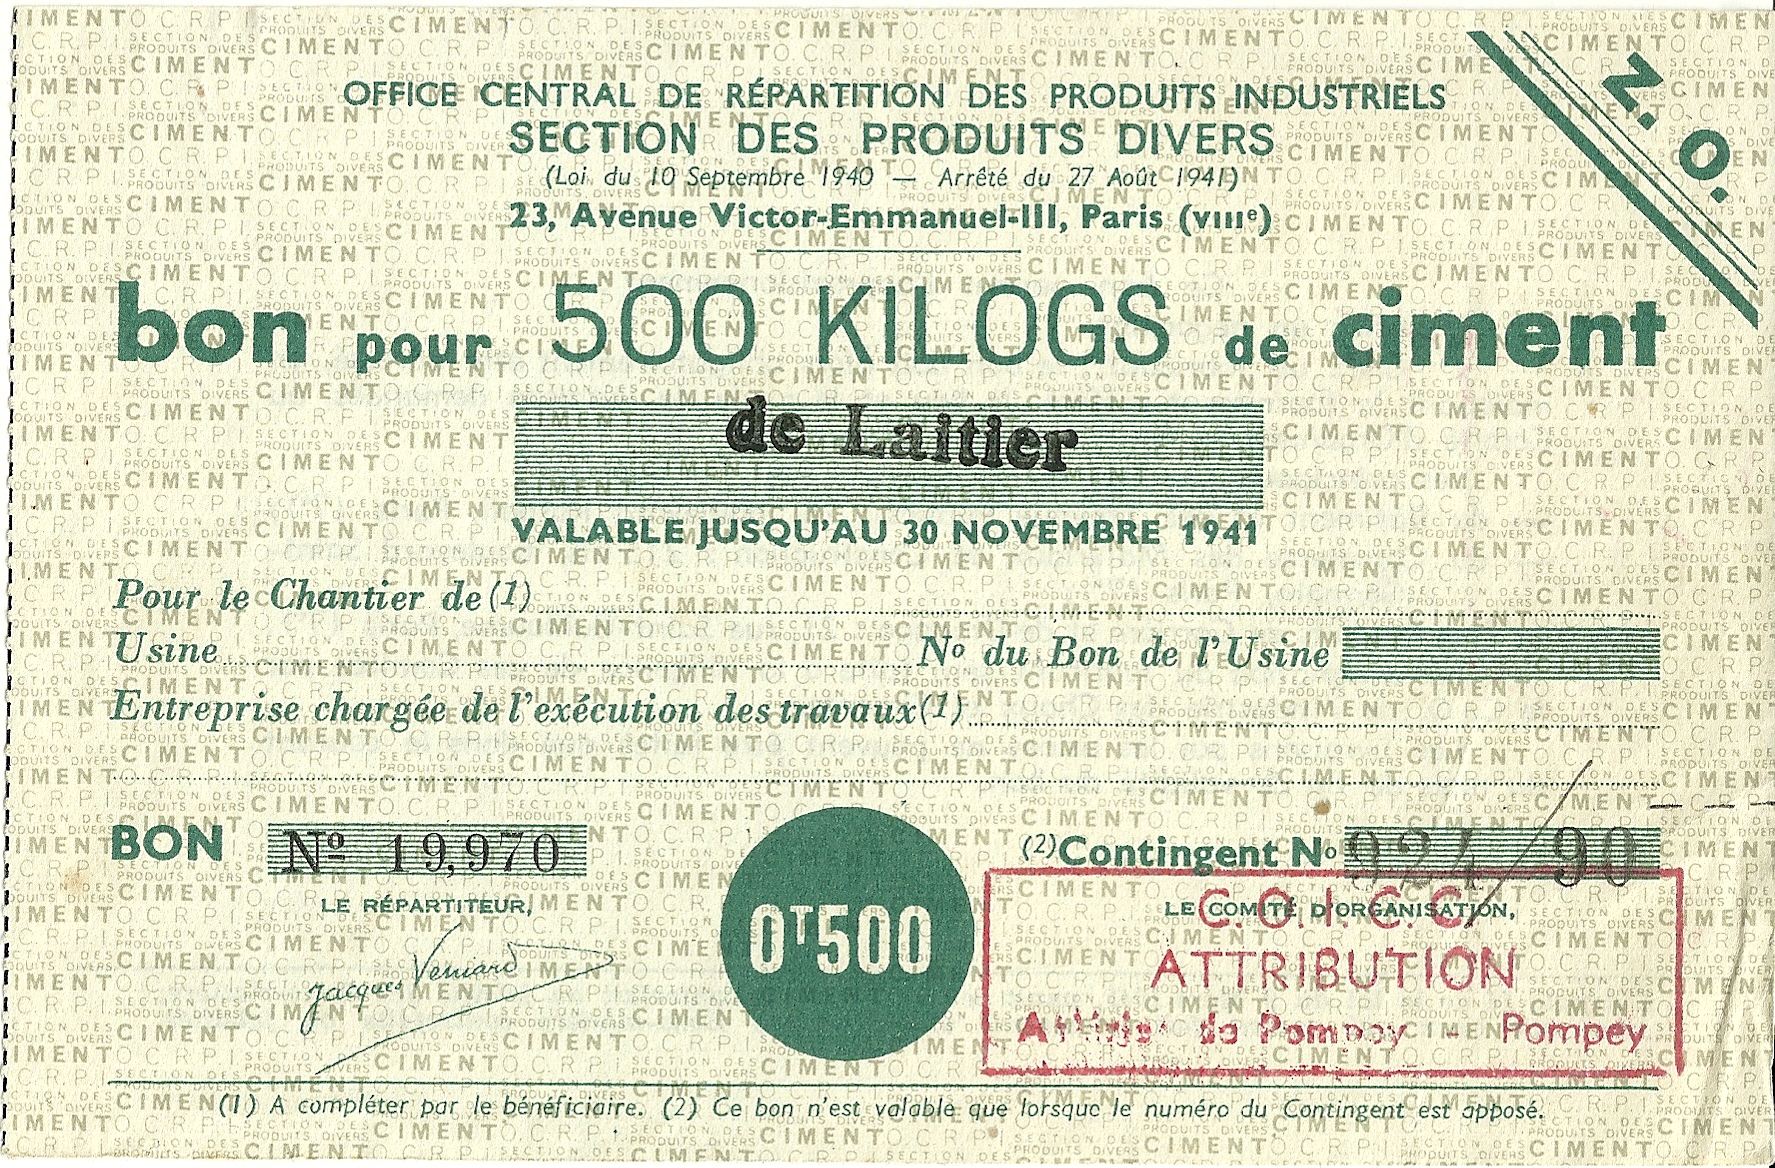 SECTION DES PRODUITS DIVERS - bon pour 500 KILOGS de ciment de Laitier - 19,970